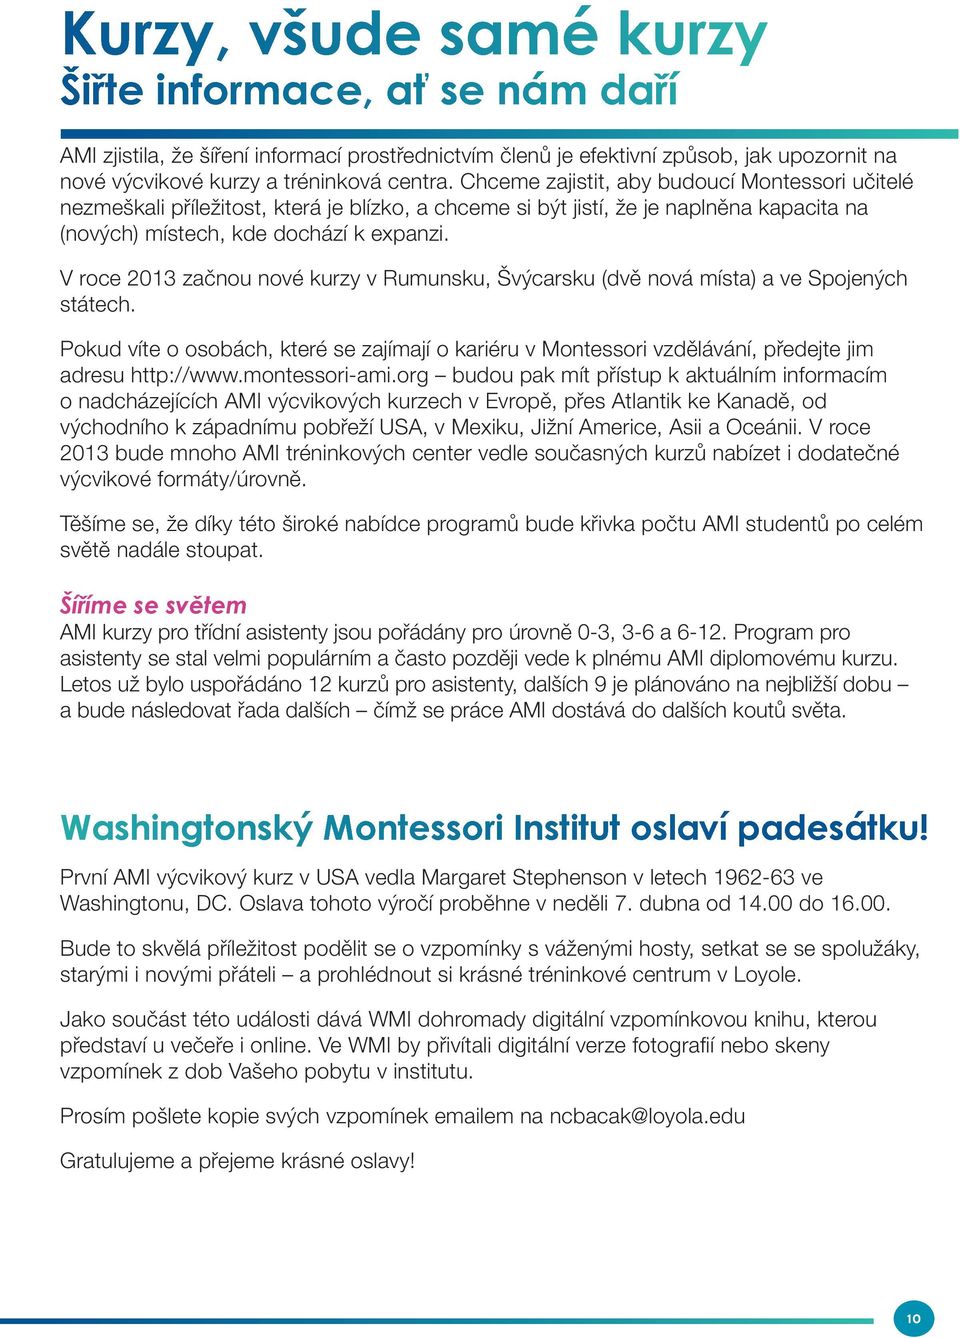 V roce 2013 začnou nové kurzy v Rumunsku, Švýcarsku (dvě nová místa) a ve Spojených státech. Pokud víte o osobách, které se zajímají o kariéru v Montessori vzdělávání, předejte jim adresu http://www.